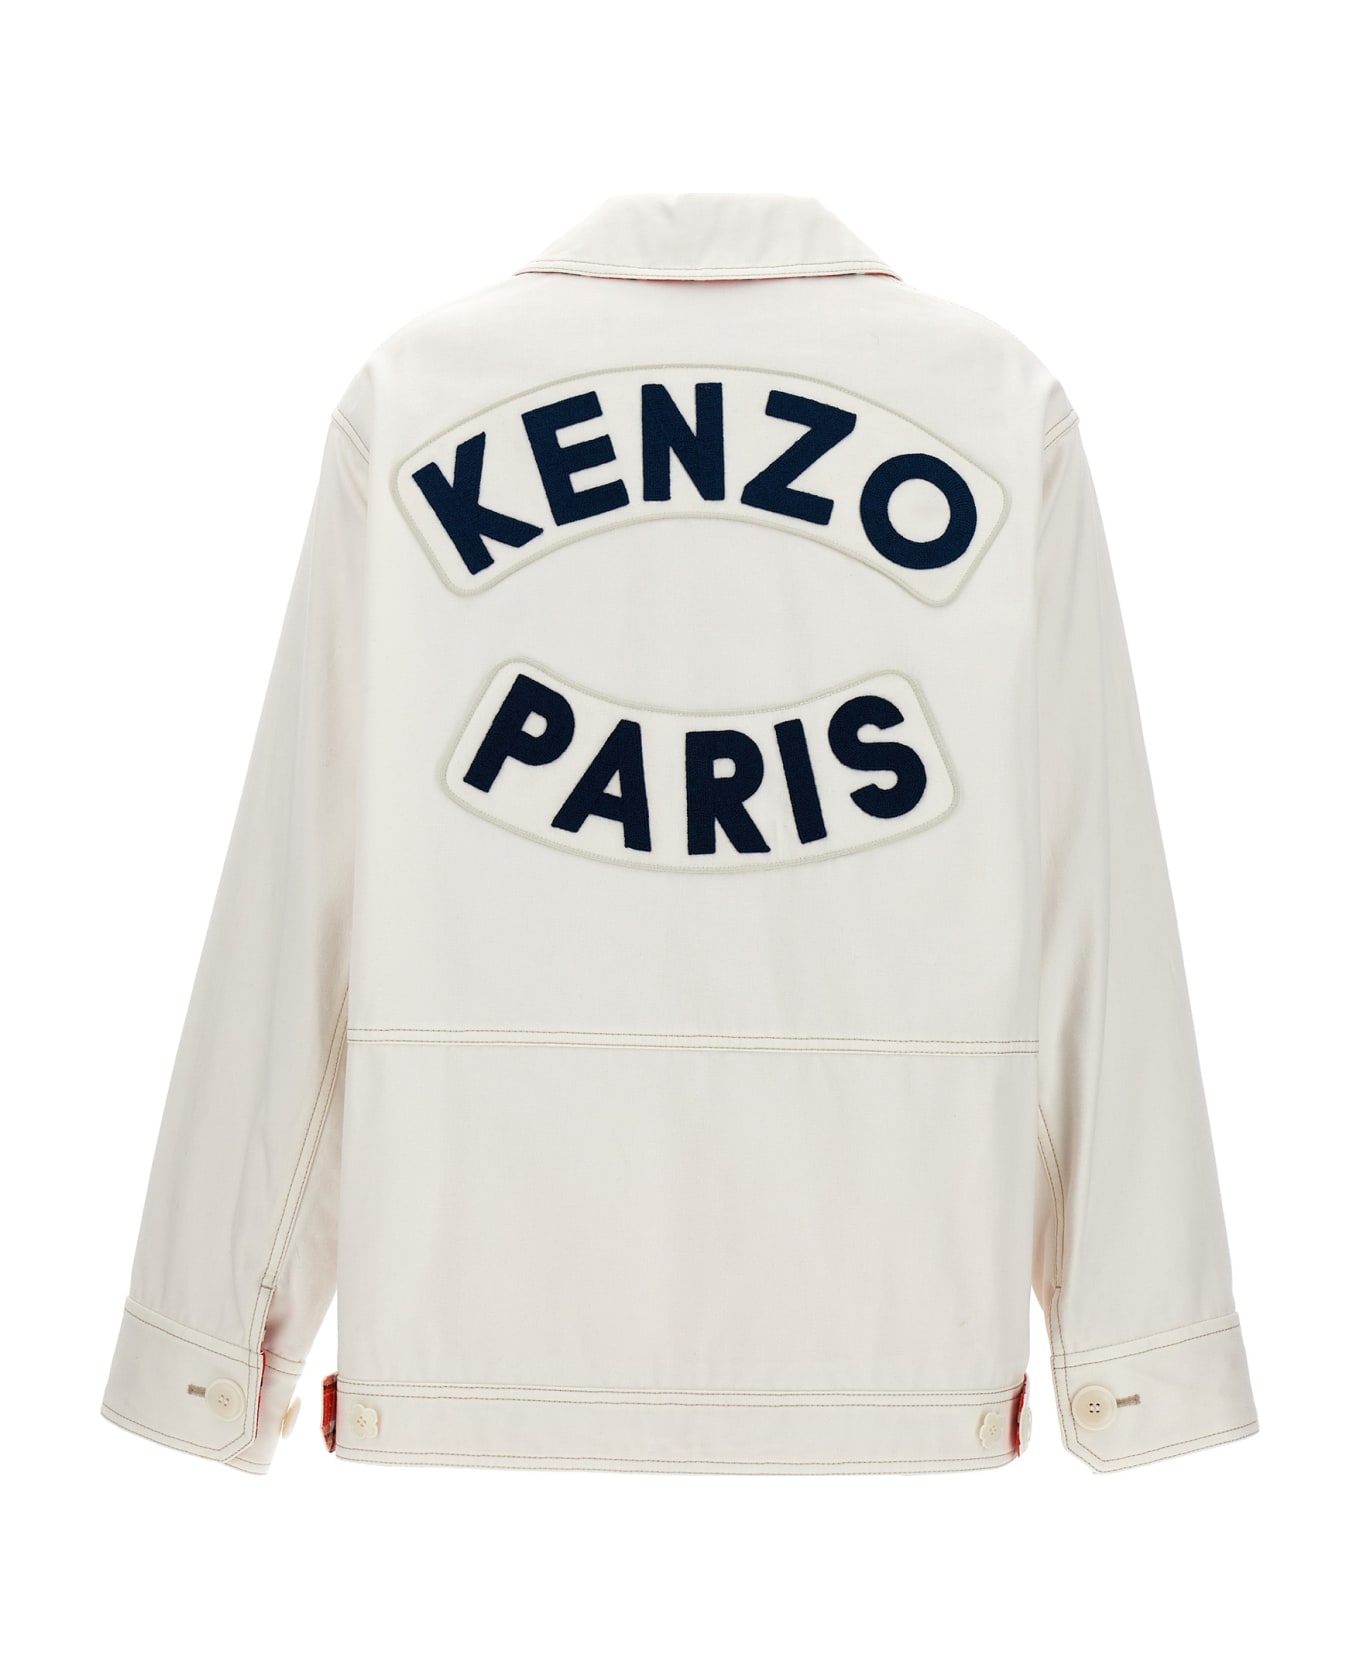 Kenzo Workwear Jacket - White